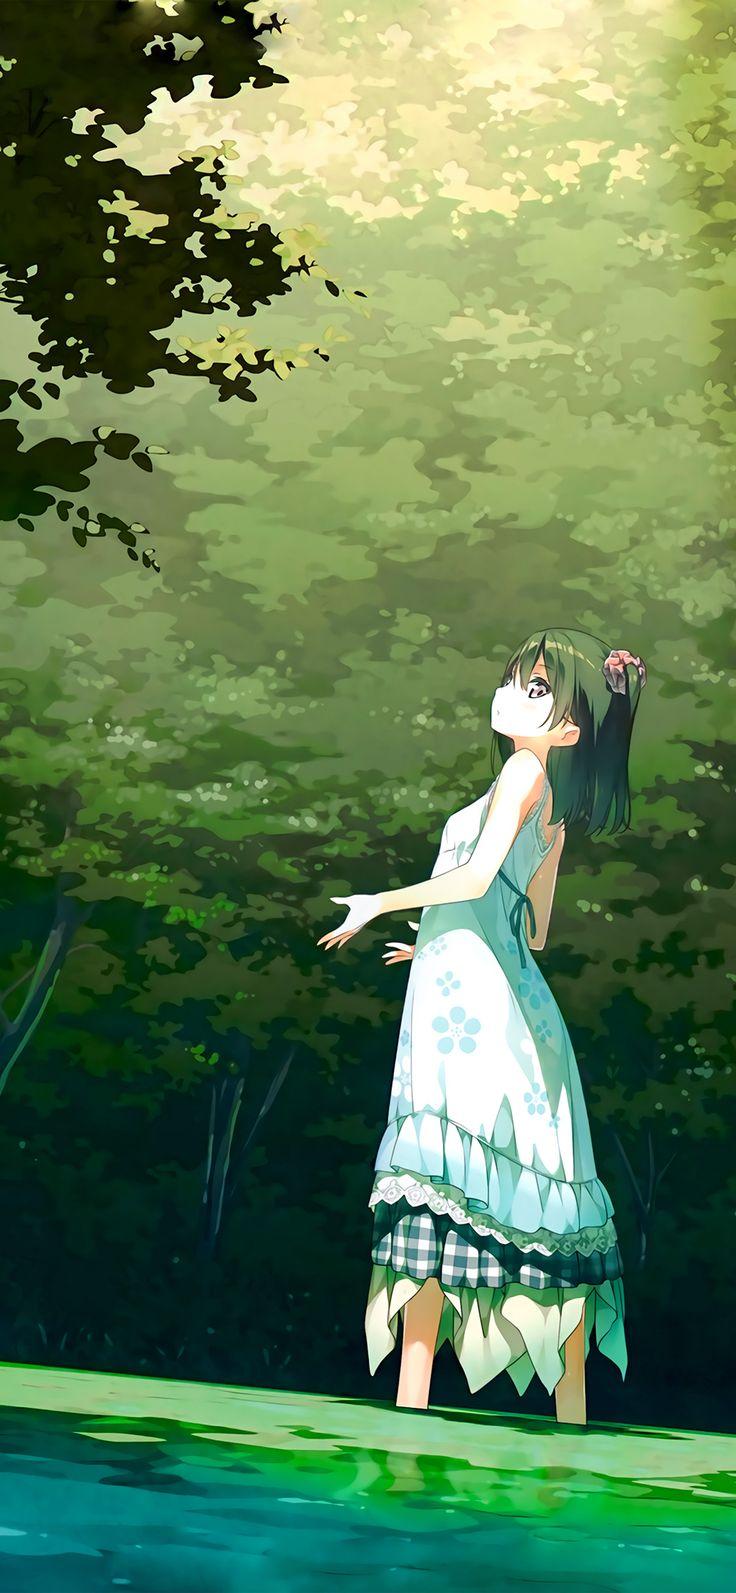 iPhone X Wallpaper, anime girl green art illustration